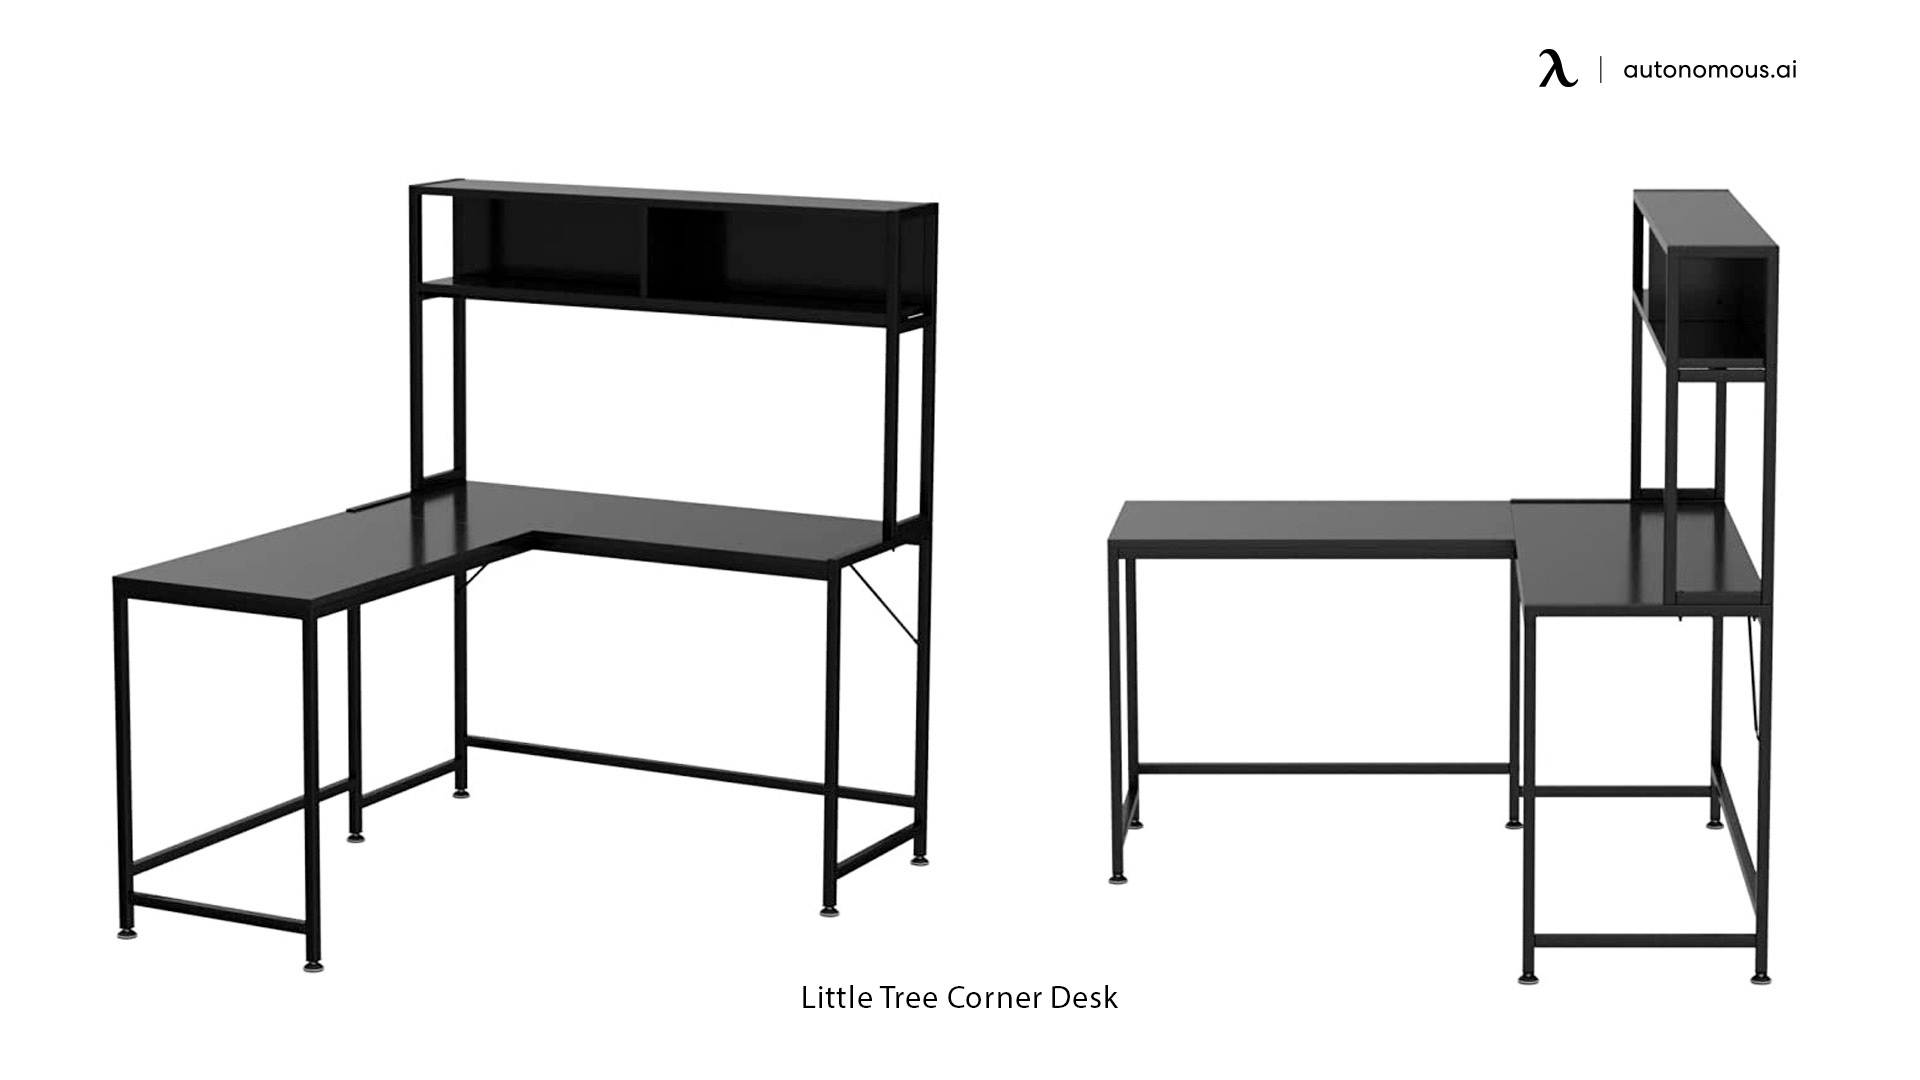 Little Tree Corner Desk